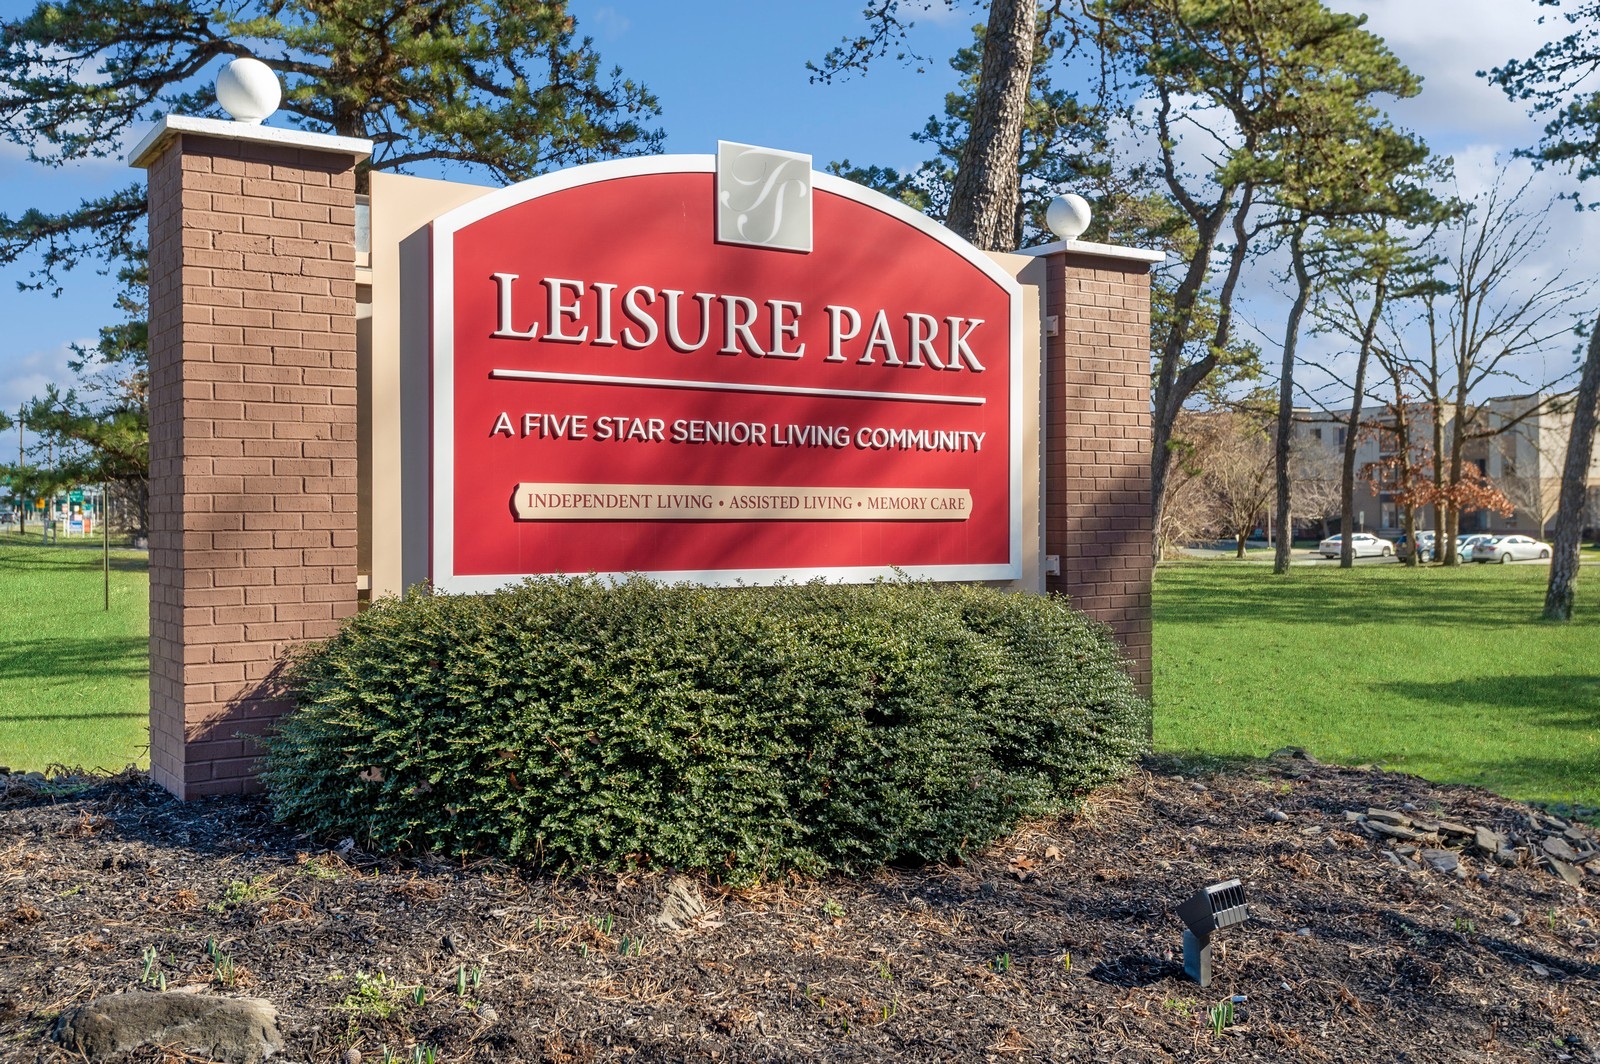 Leisure Park community exterior sign Leisure Park Lakewood (732)370-0444